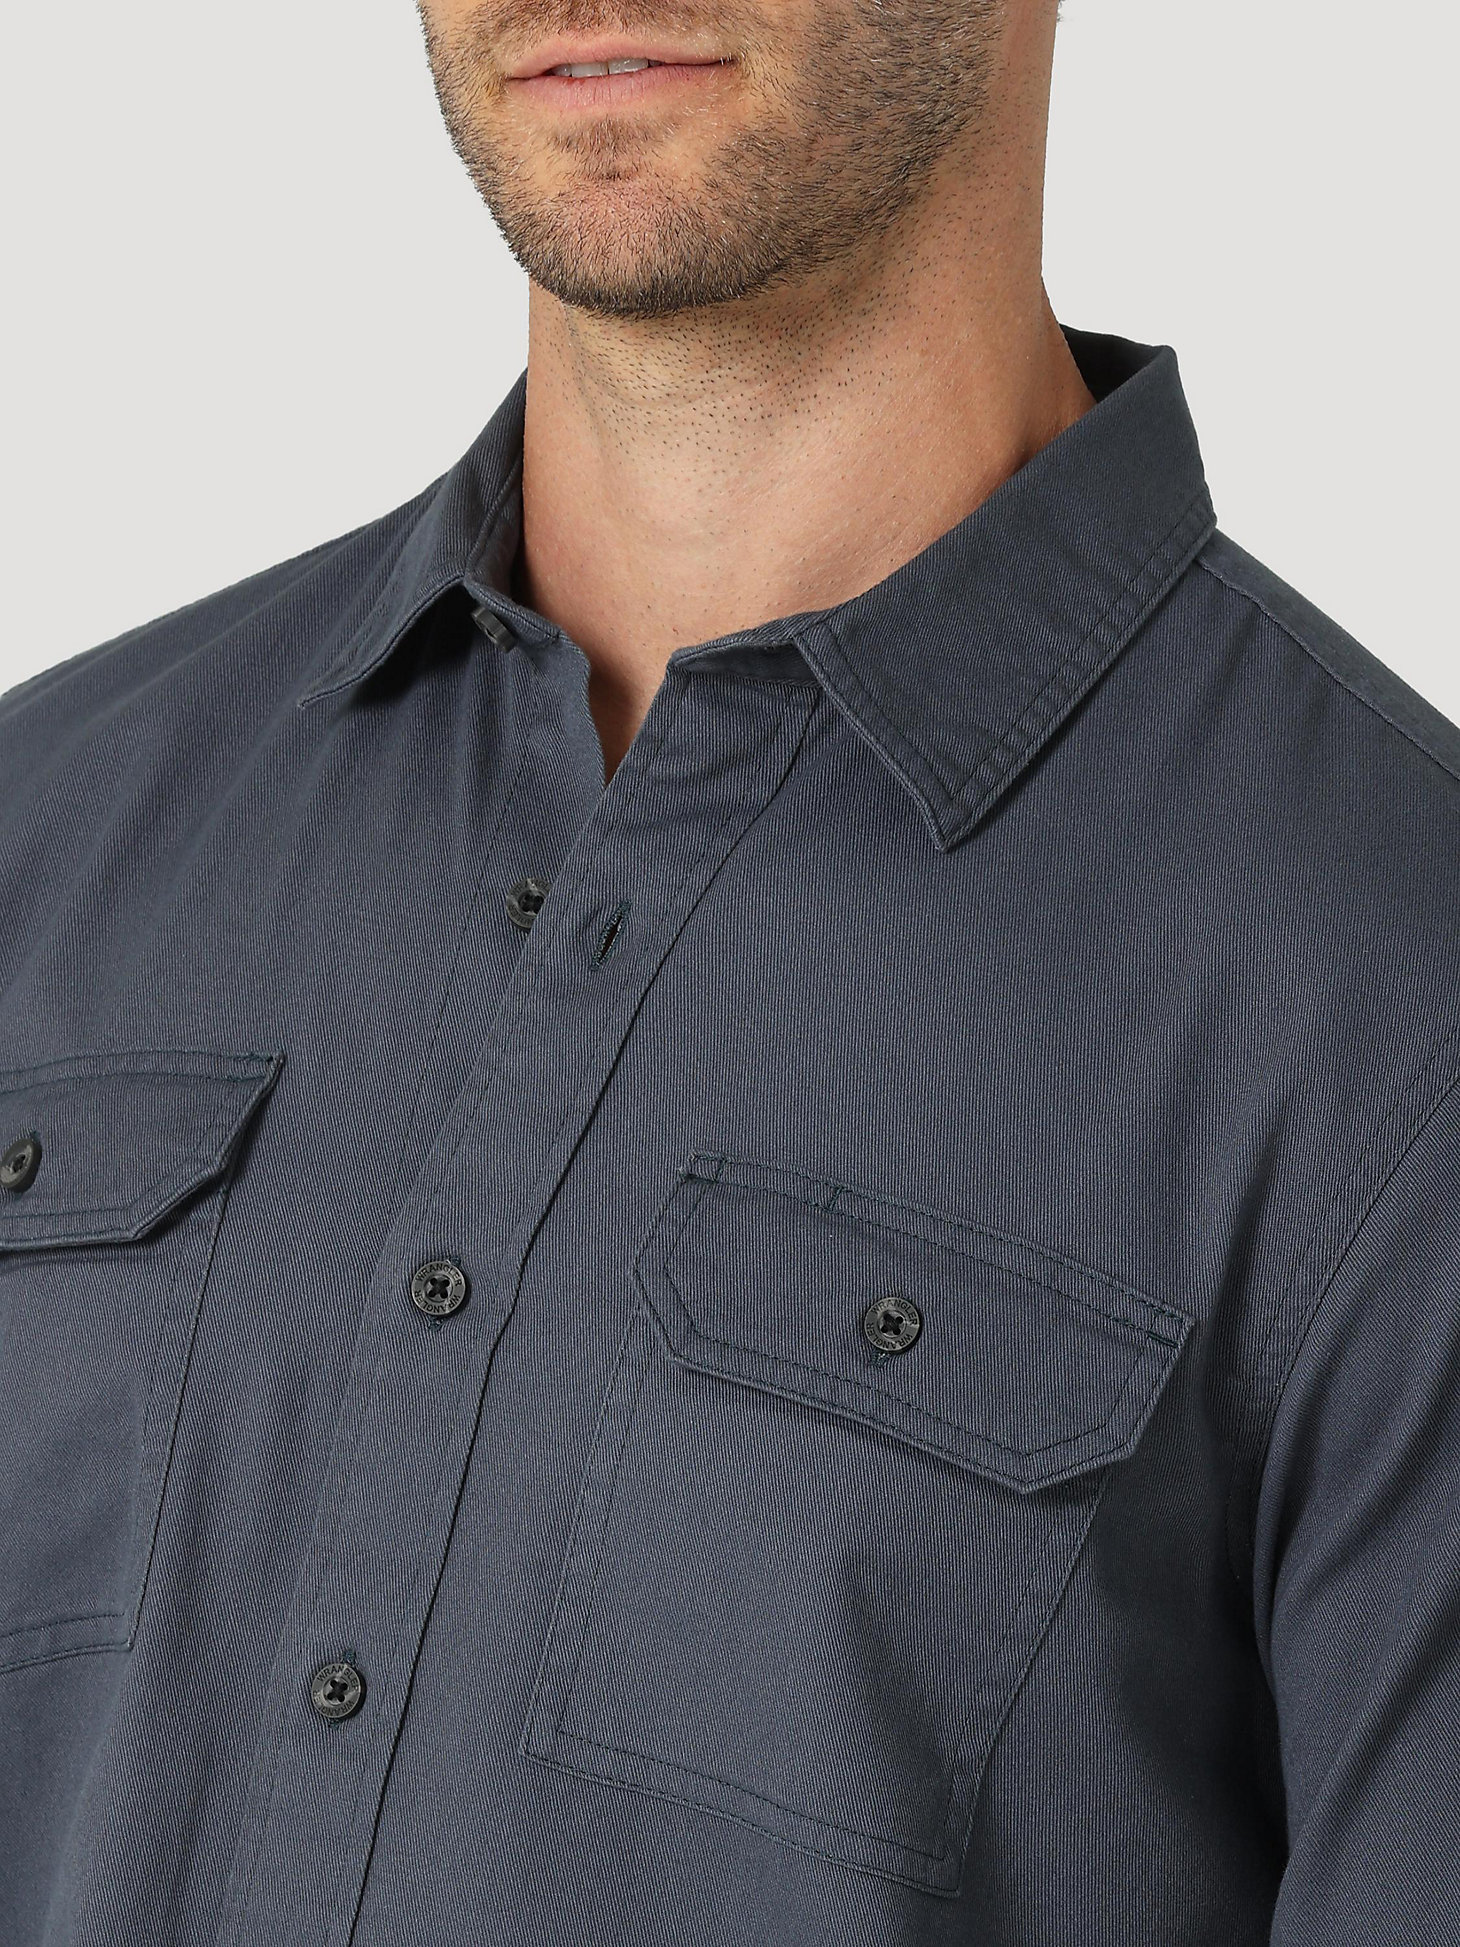 Men's Wrangler® Long Sleeve Twill/Denim Shirt in Ombre Blue alternative view 2